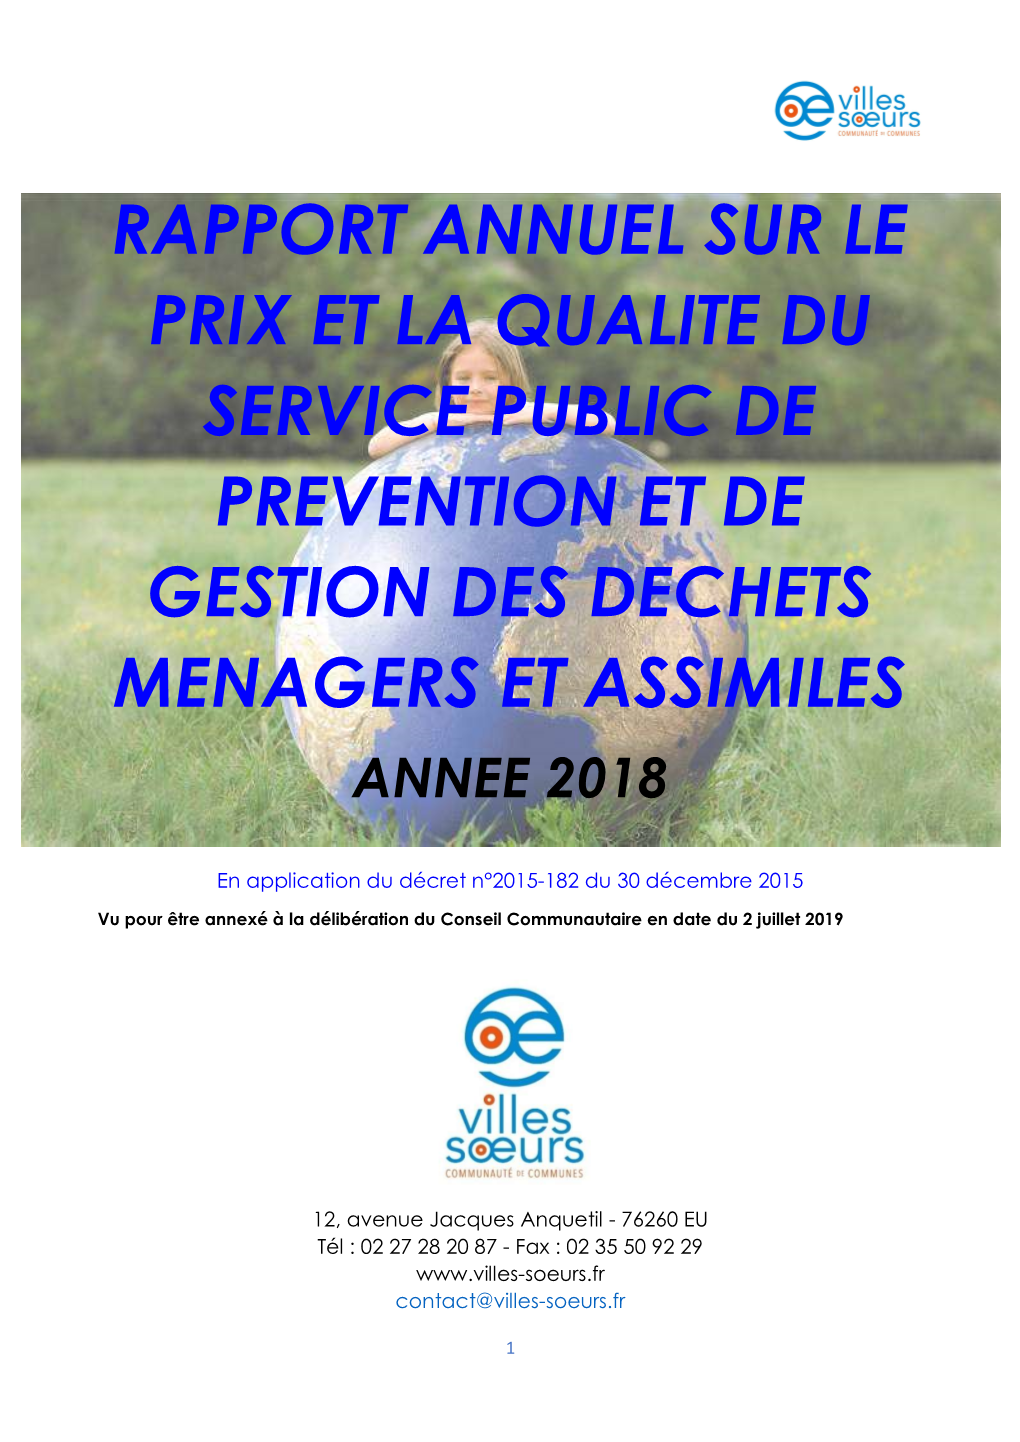 Rapport Annuel Sur Le Prix Et La Qualite Du Service Public De Prevention Et De Gestion Des Dechets Menagers Et Assimiles Annee 2018